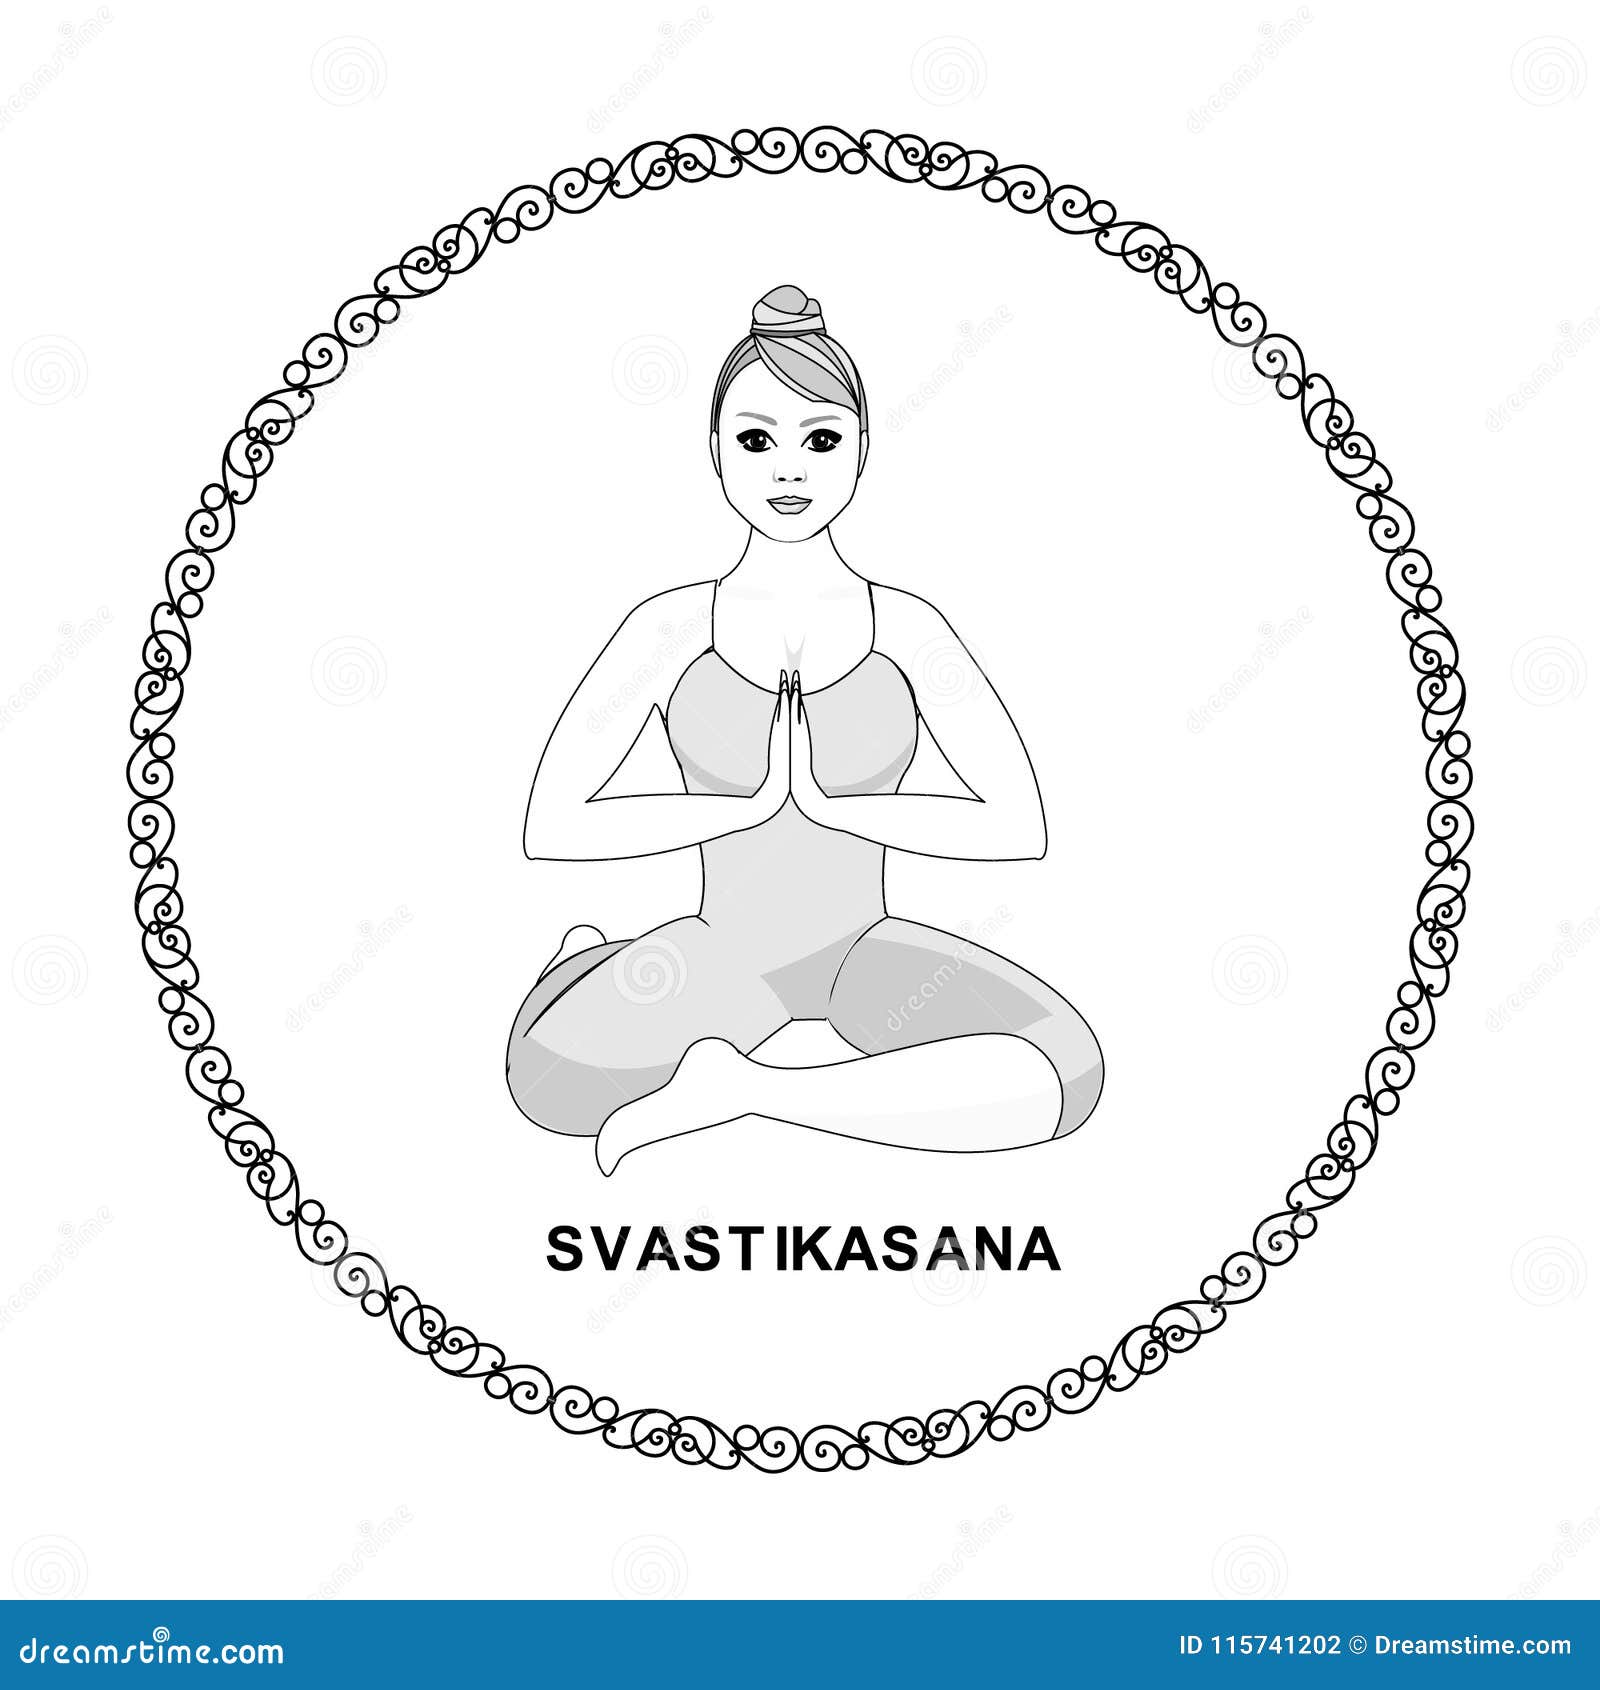 Svastikasana Stock Illustrations – 6 Svastikasana Stock Illustrations,  Vectors & Clipart - Dreamstime